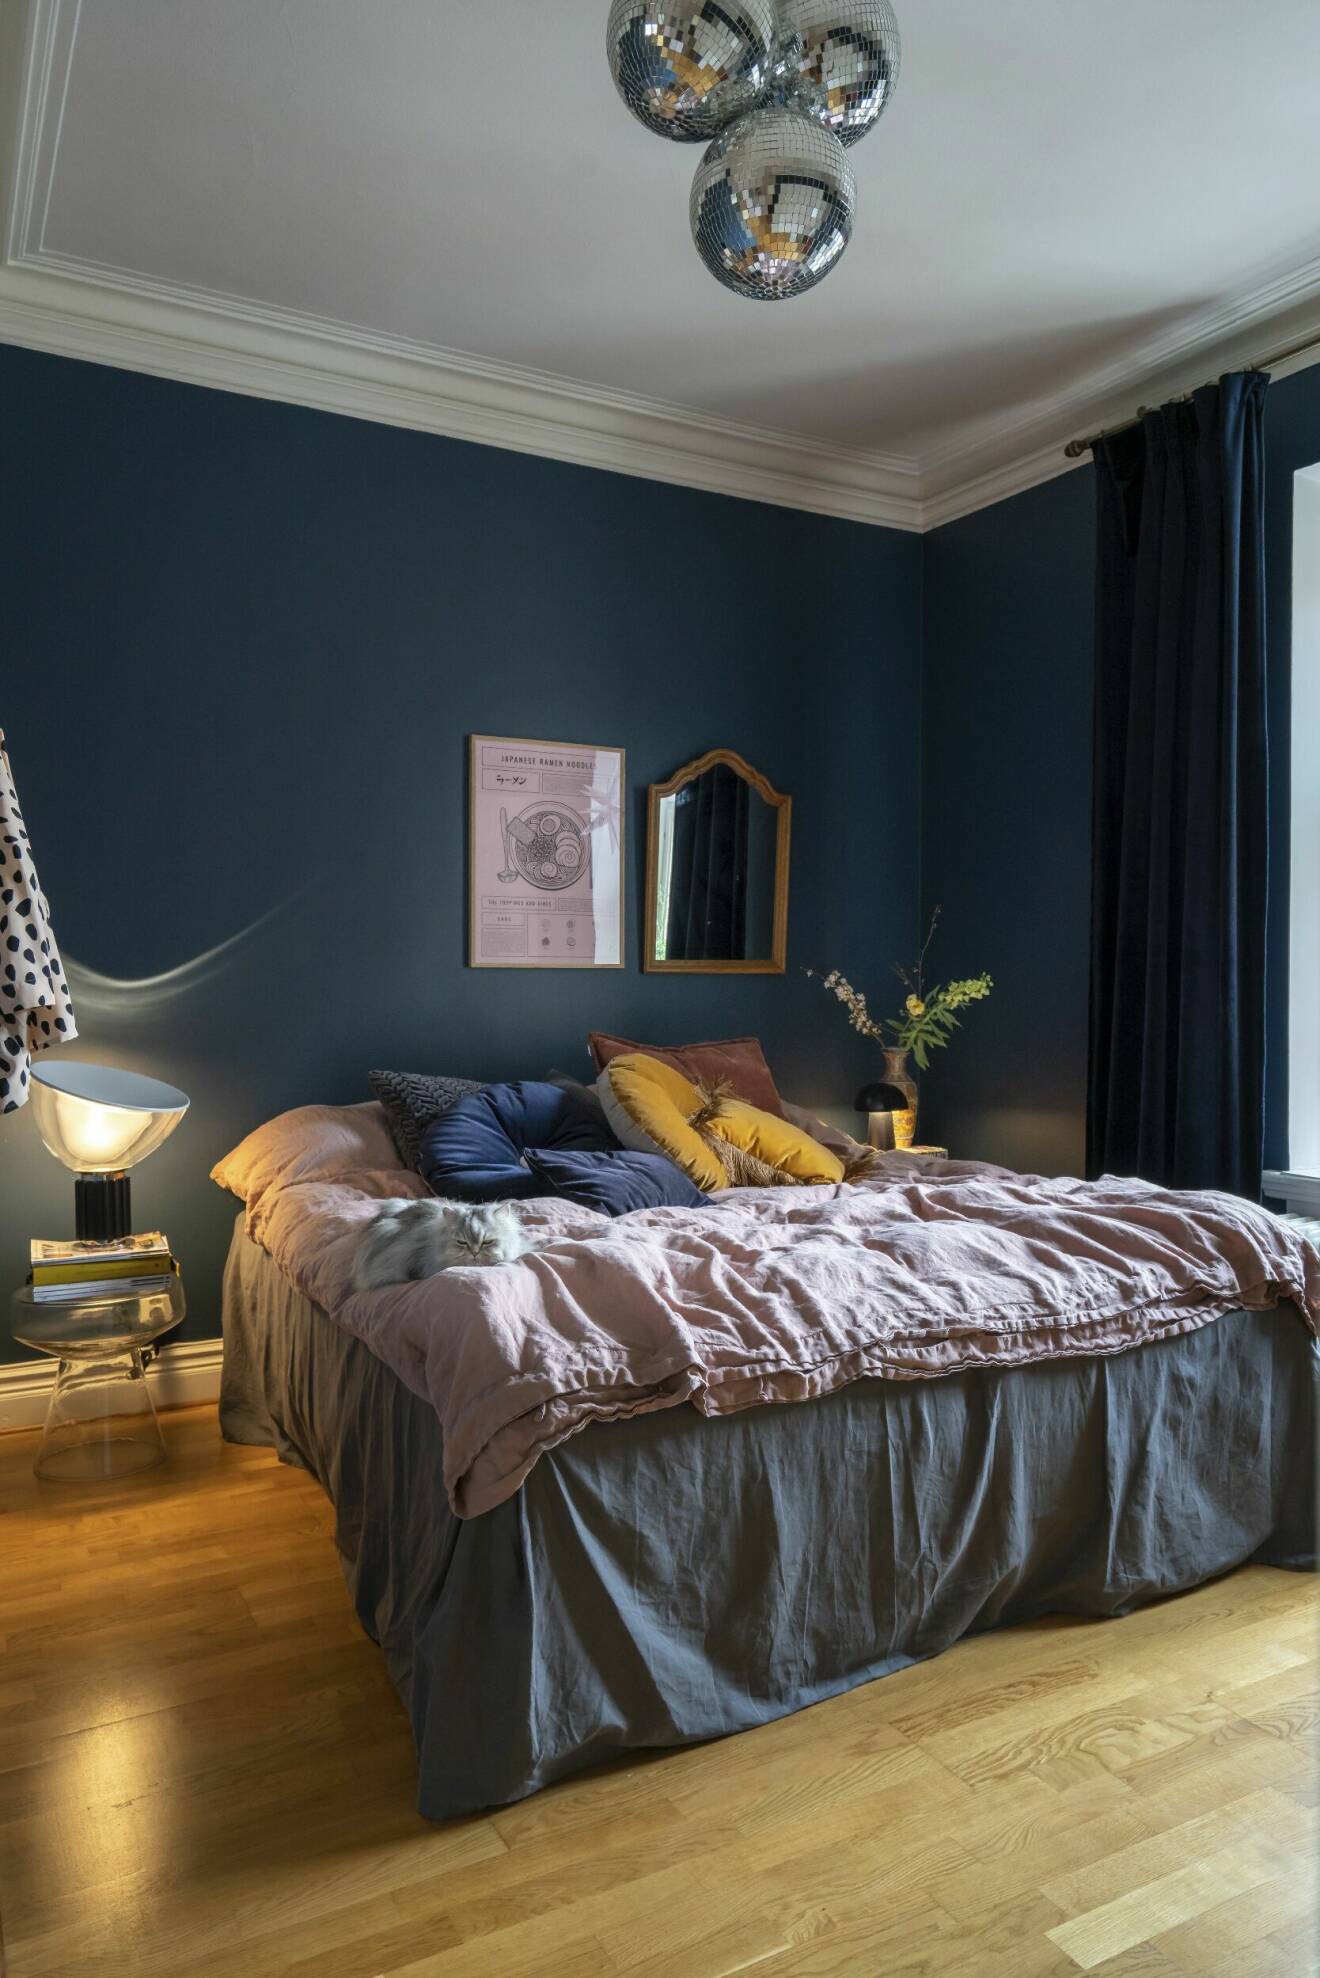 Hemma hos Sara Holm i Helsingborg, mörkblått i sovrummet.